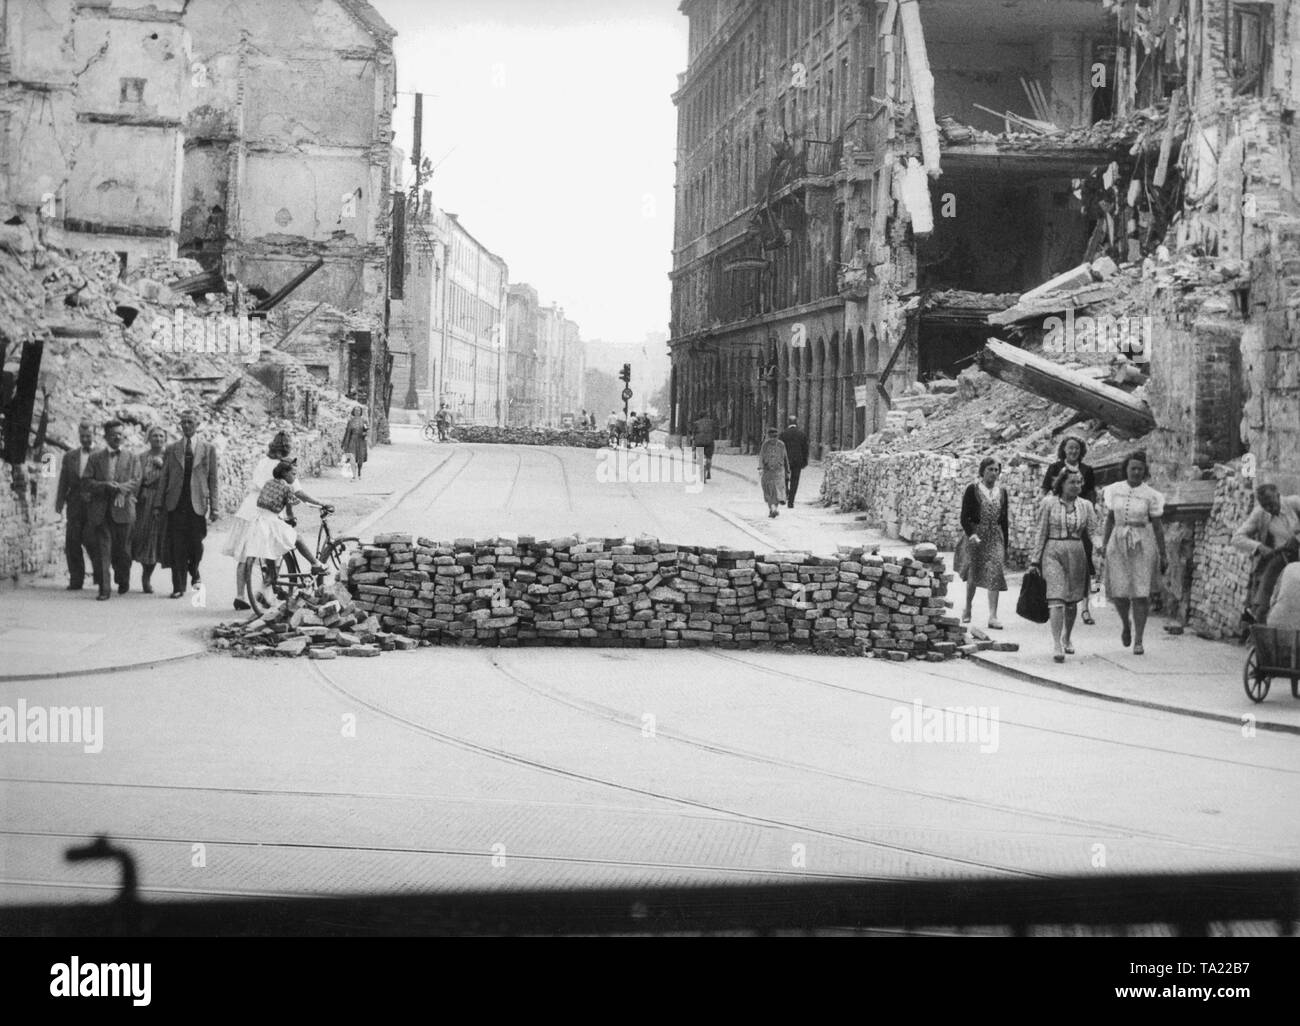 La II Guerra Mundial - ciudades arruinadas: periodo de posguerra en Munich  en 1945, esquina con tanque Perusastrasse Theatinerstrasse trampas. La  vista desde aquí sobre la Maximilianstrasse. En la mitad izquierda se